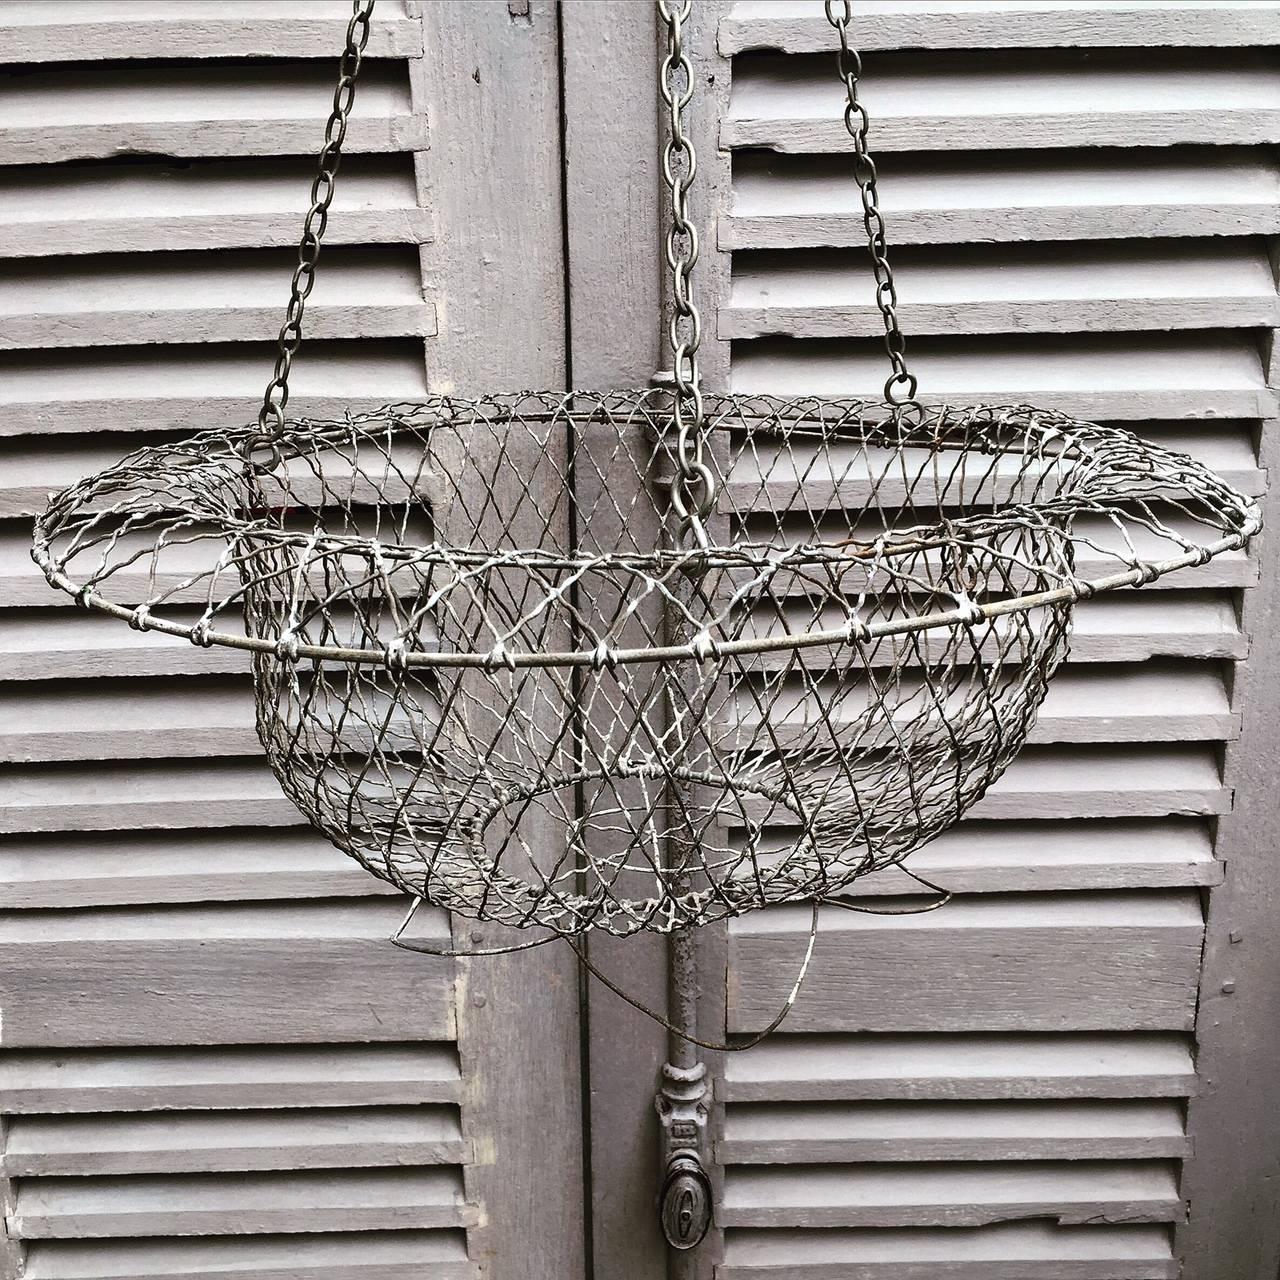 Vintage zinc galvanized wirework garden hanging basket.